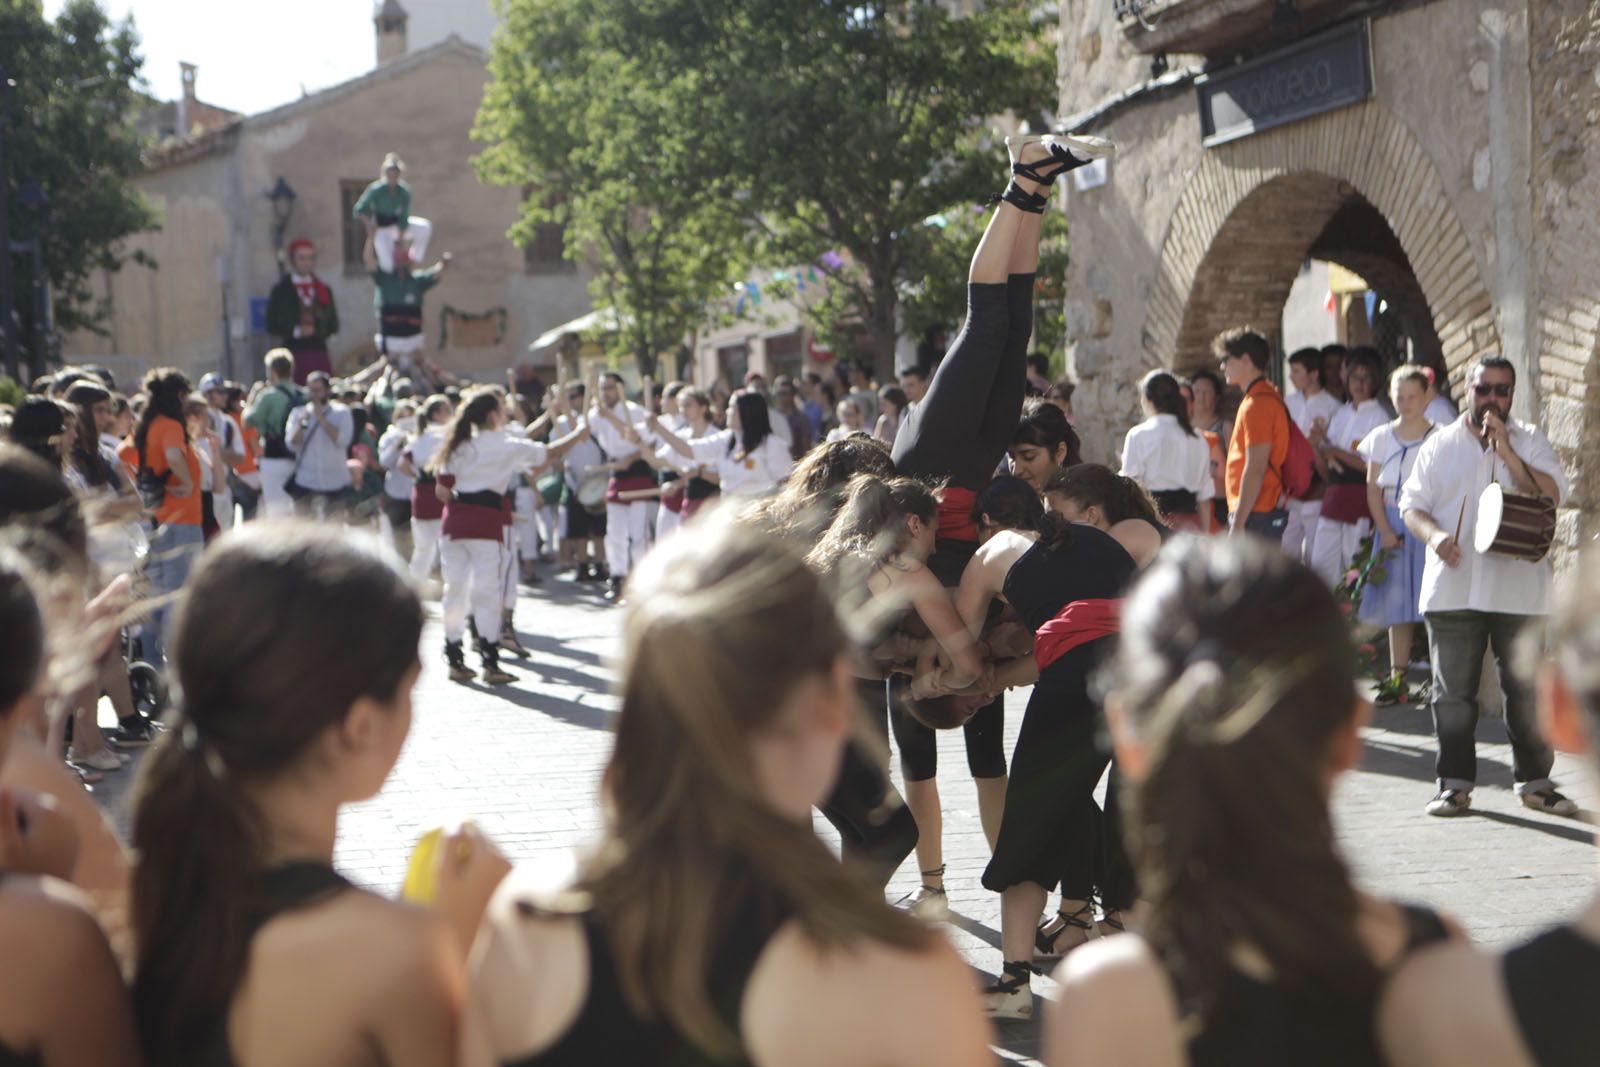 Seguci de Sant Pere i esclat de Festa Major FOTO: Artur Ribera